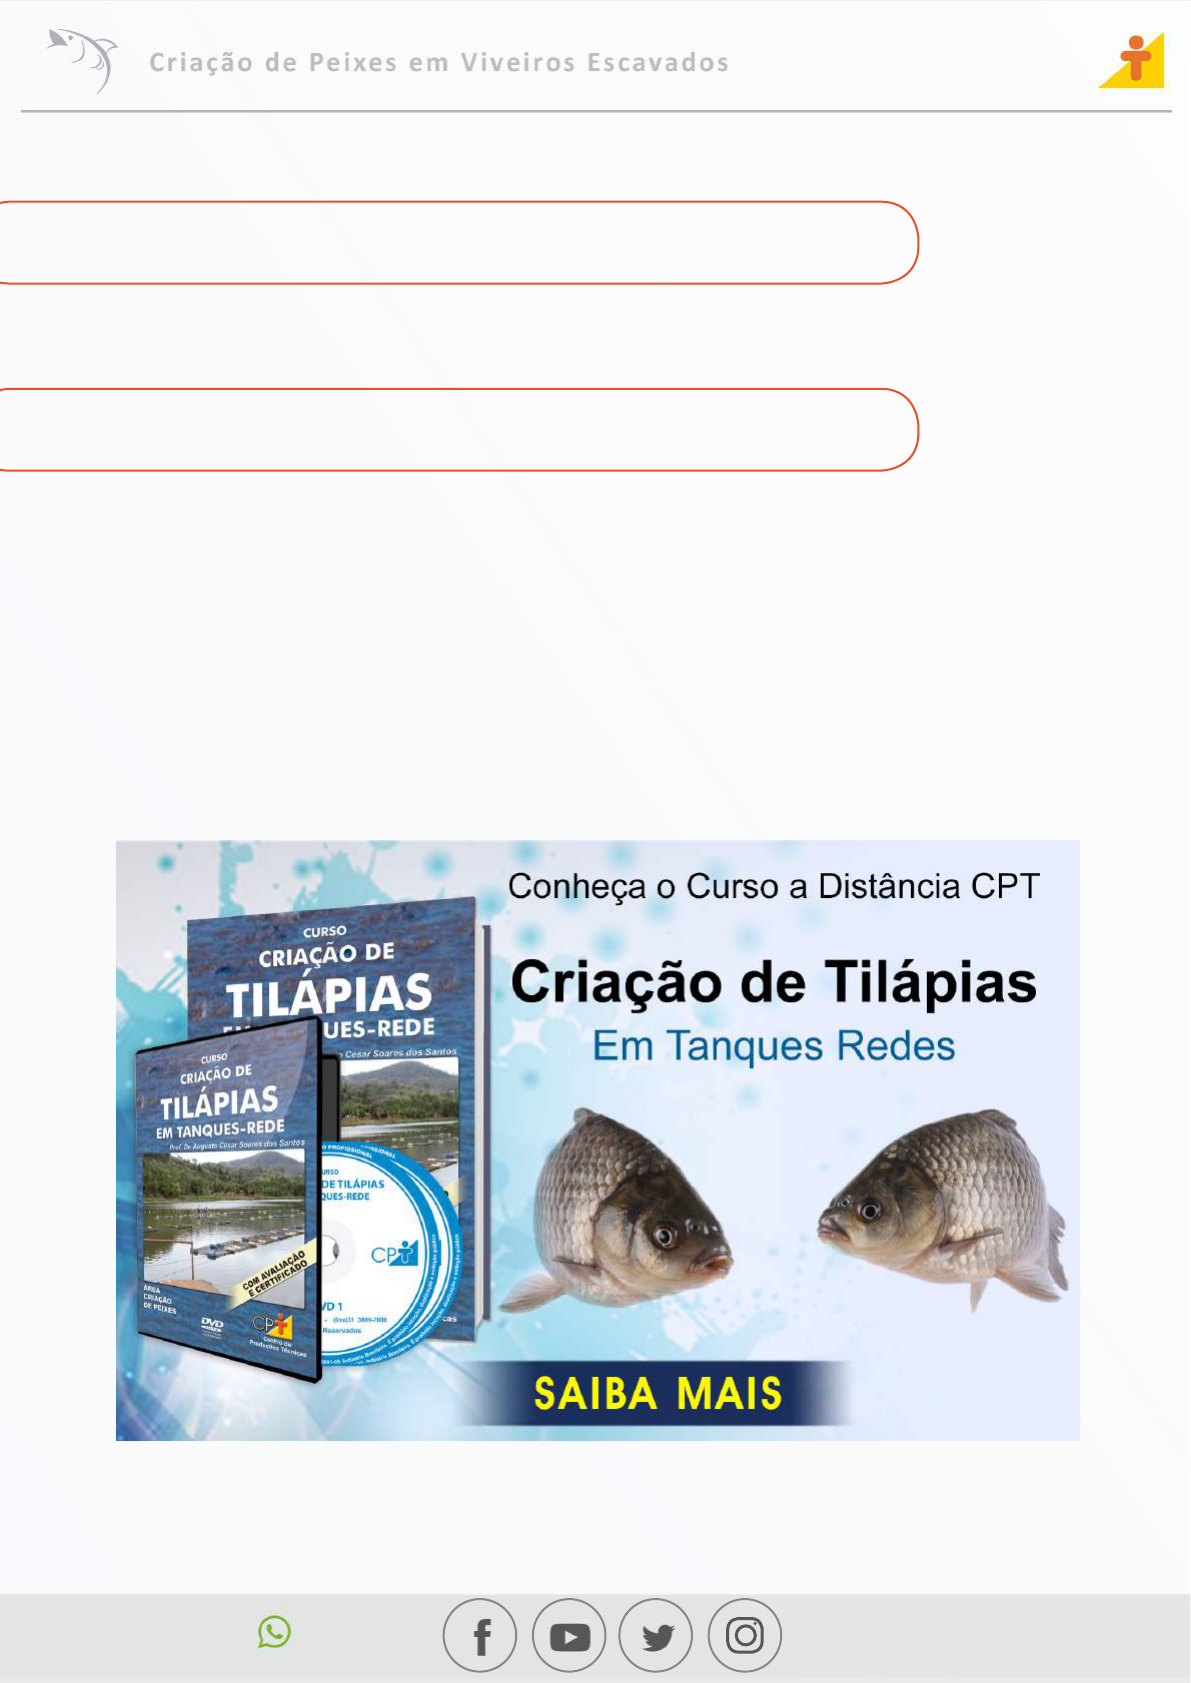 Calaméo - Os peixes trocados por miúdos.pdf